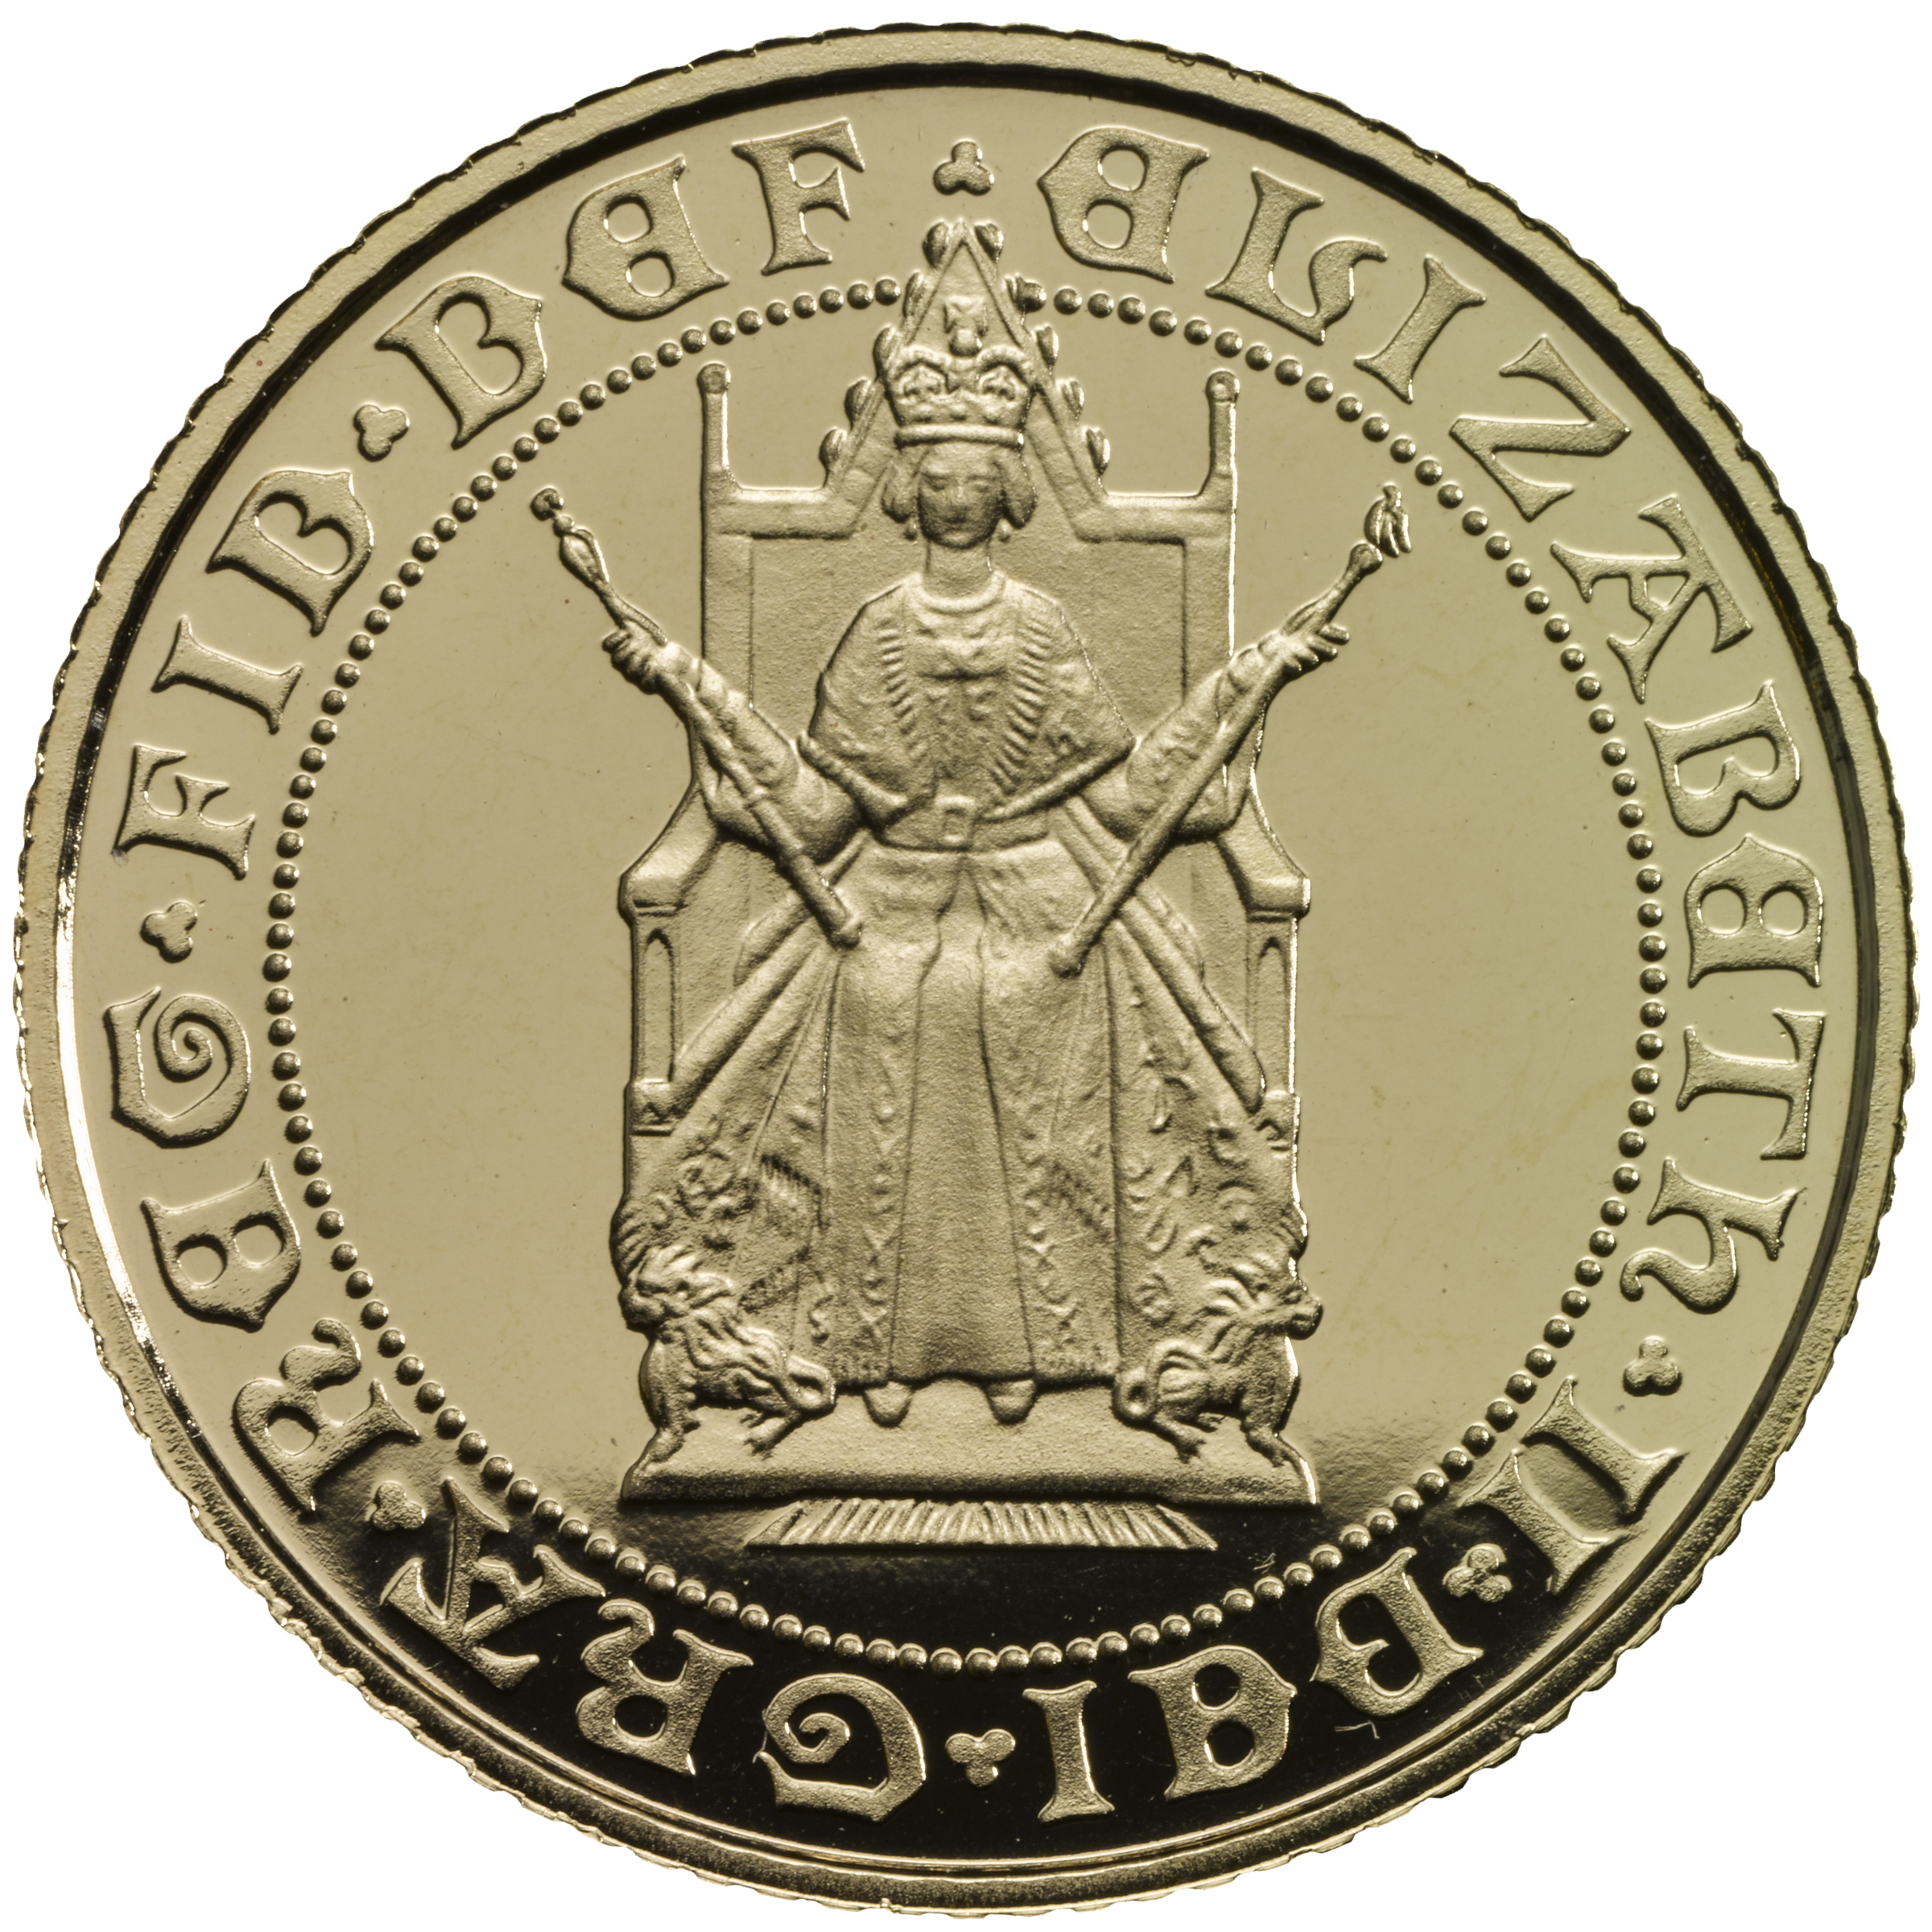 Die Münze von 1989 unterscheidet sich deutlich von anderen Münzen, da sie Königin Elizabeth auf dem Thron darstellt